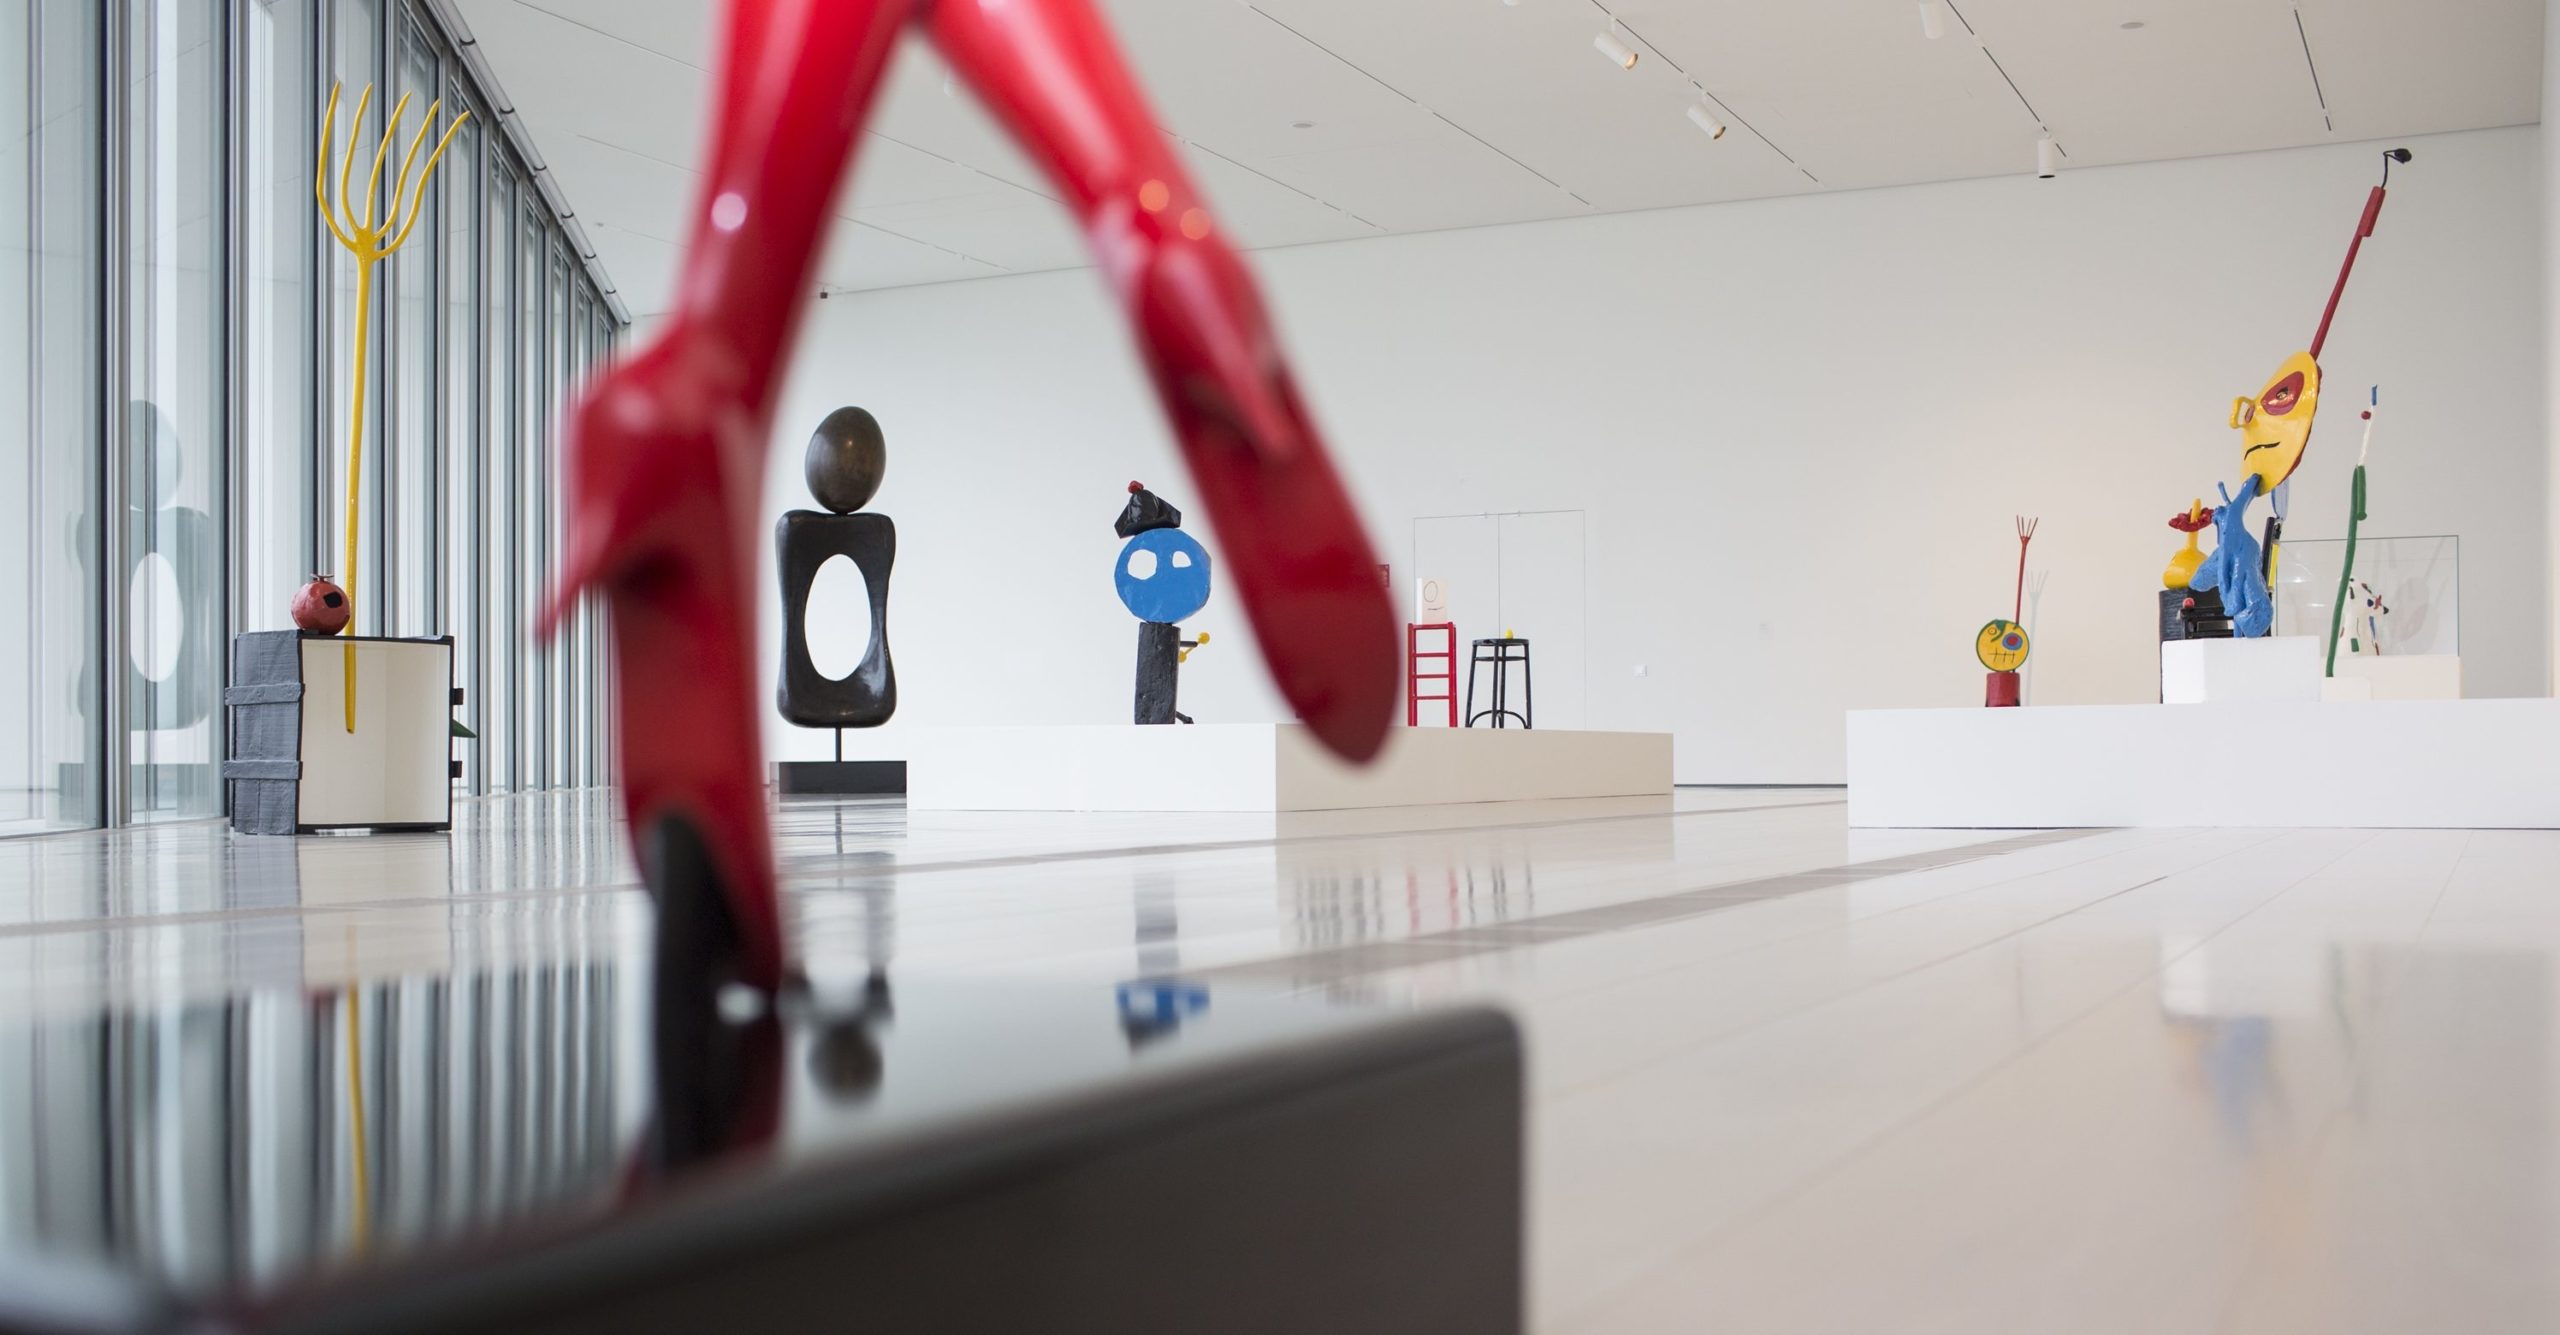 La poética del objeto en las esculturas de Miró